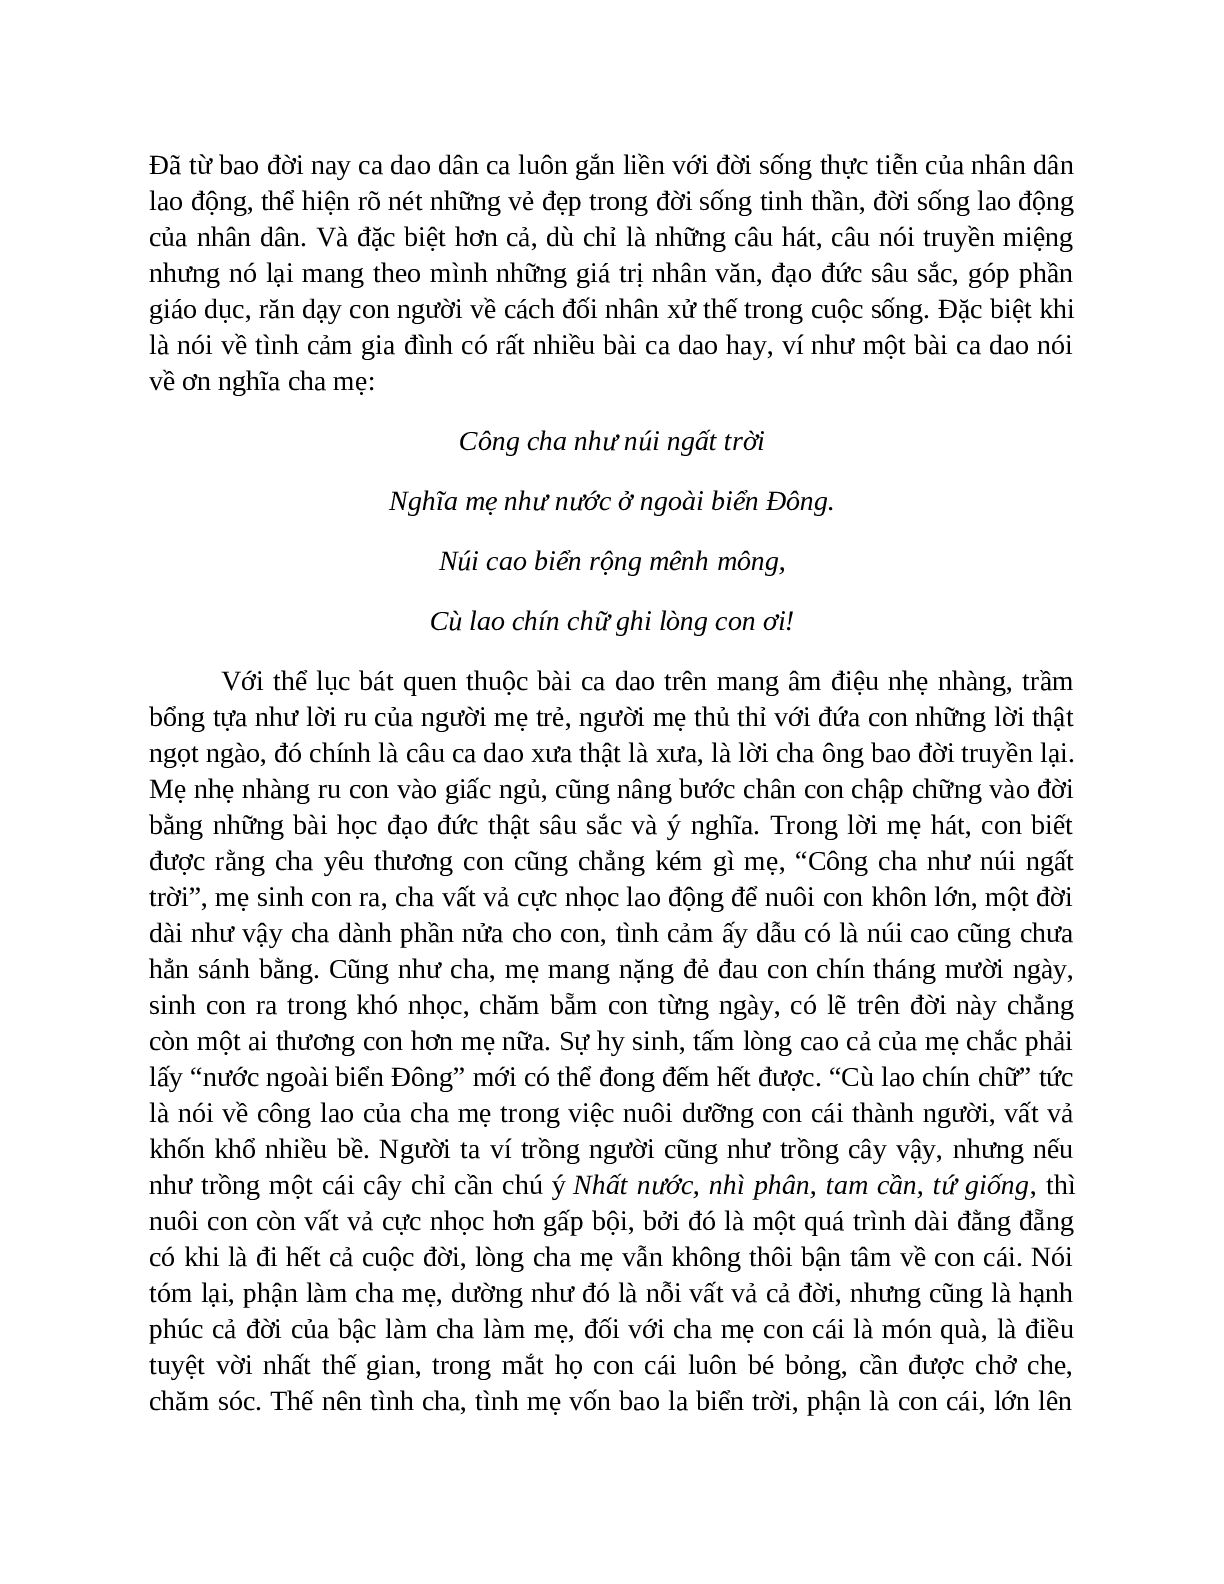 Sơ đồ tư duy bài Ca dao, dân ca những câu hát về tình cảm gia đình dễ nhớ, ngắn nhất - Ngữ văn lớp 7 (trang 5)